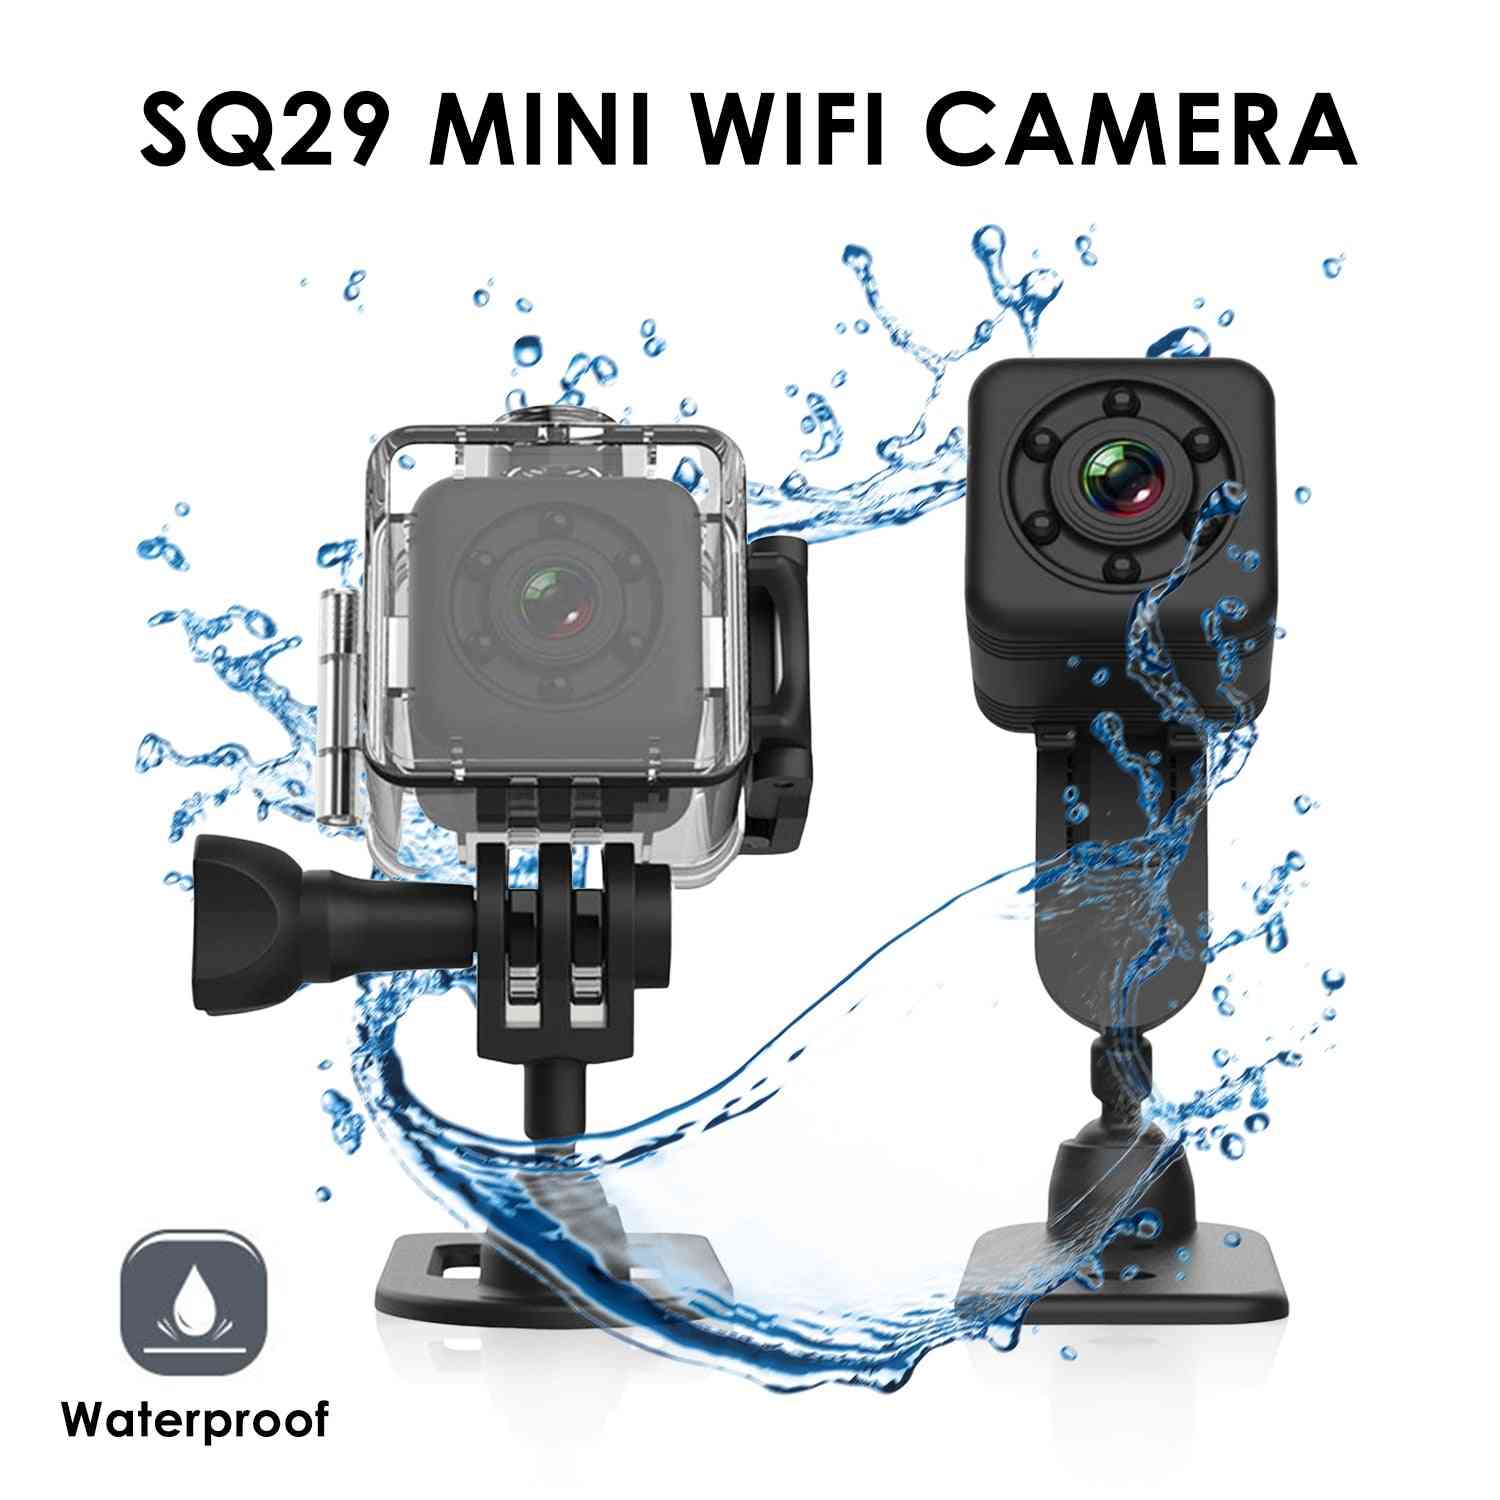 Sportowa mini kamera ip SQ29 do noktowizora, wodoodporna kamera ruchu, mikro kamera dvr sport - sq11 czarna